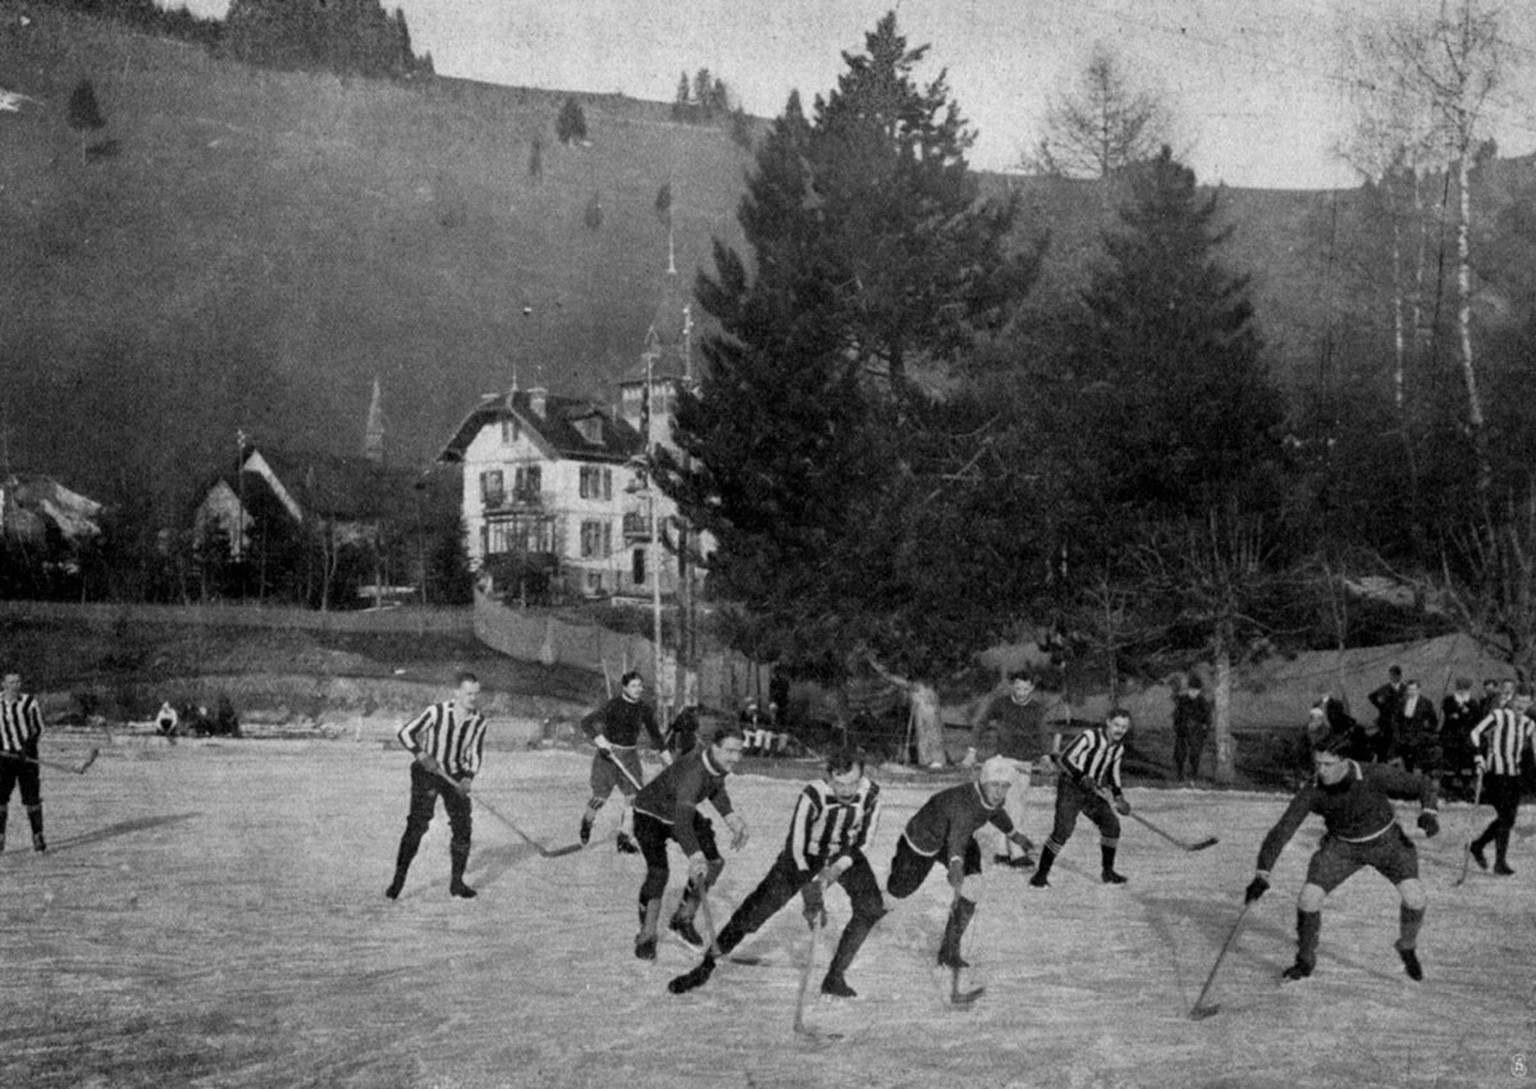 Les Allemands du Berliner Schlittschuhclub affrontent l’équipe belge lors des premiers championnats d’Europe en 1910 aux Avants, près de Montreux.
https://commons.wikimedia.org/wiki/File:1910_Ice_Hock ...